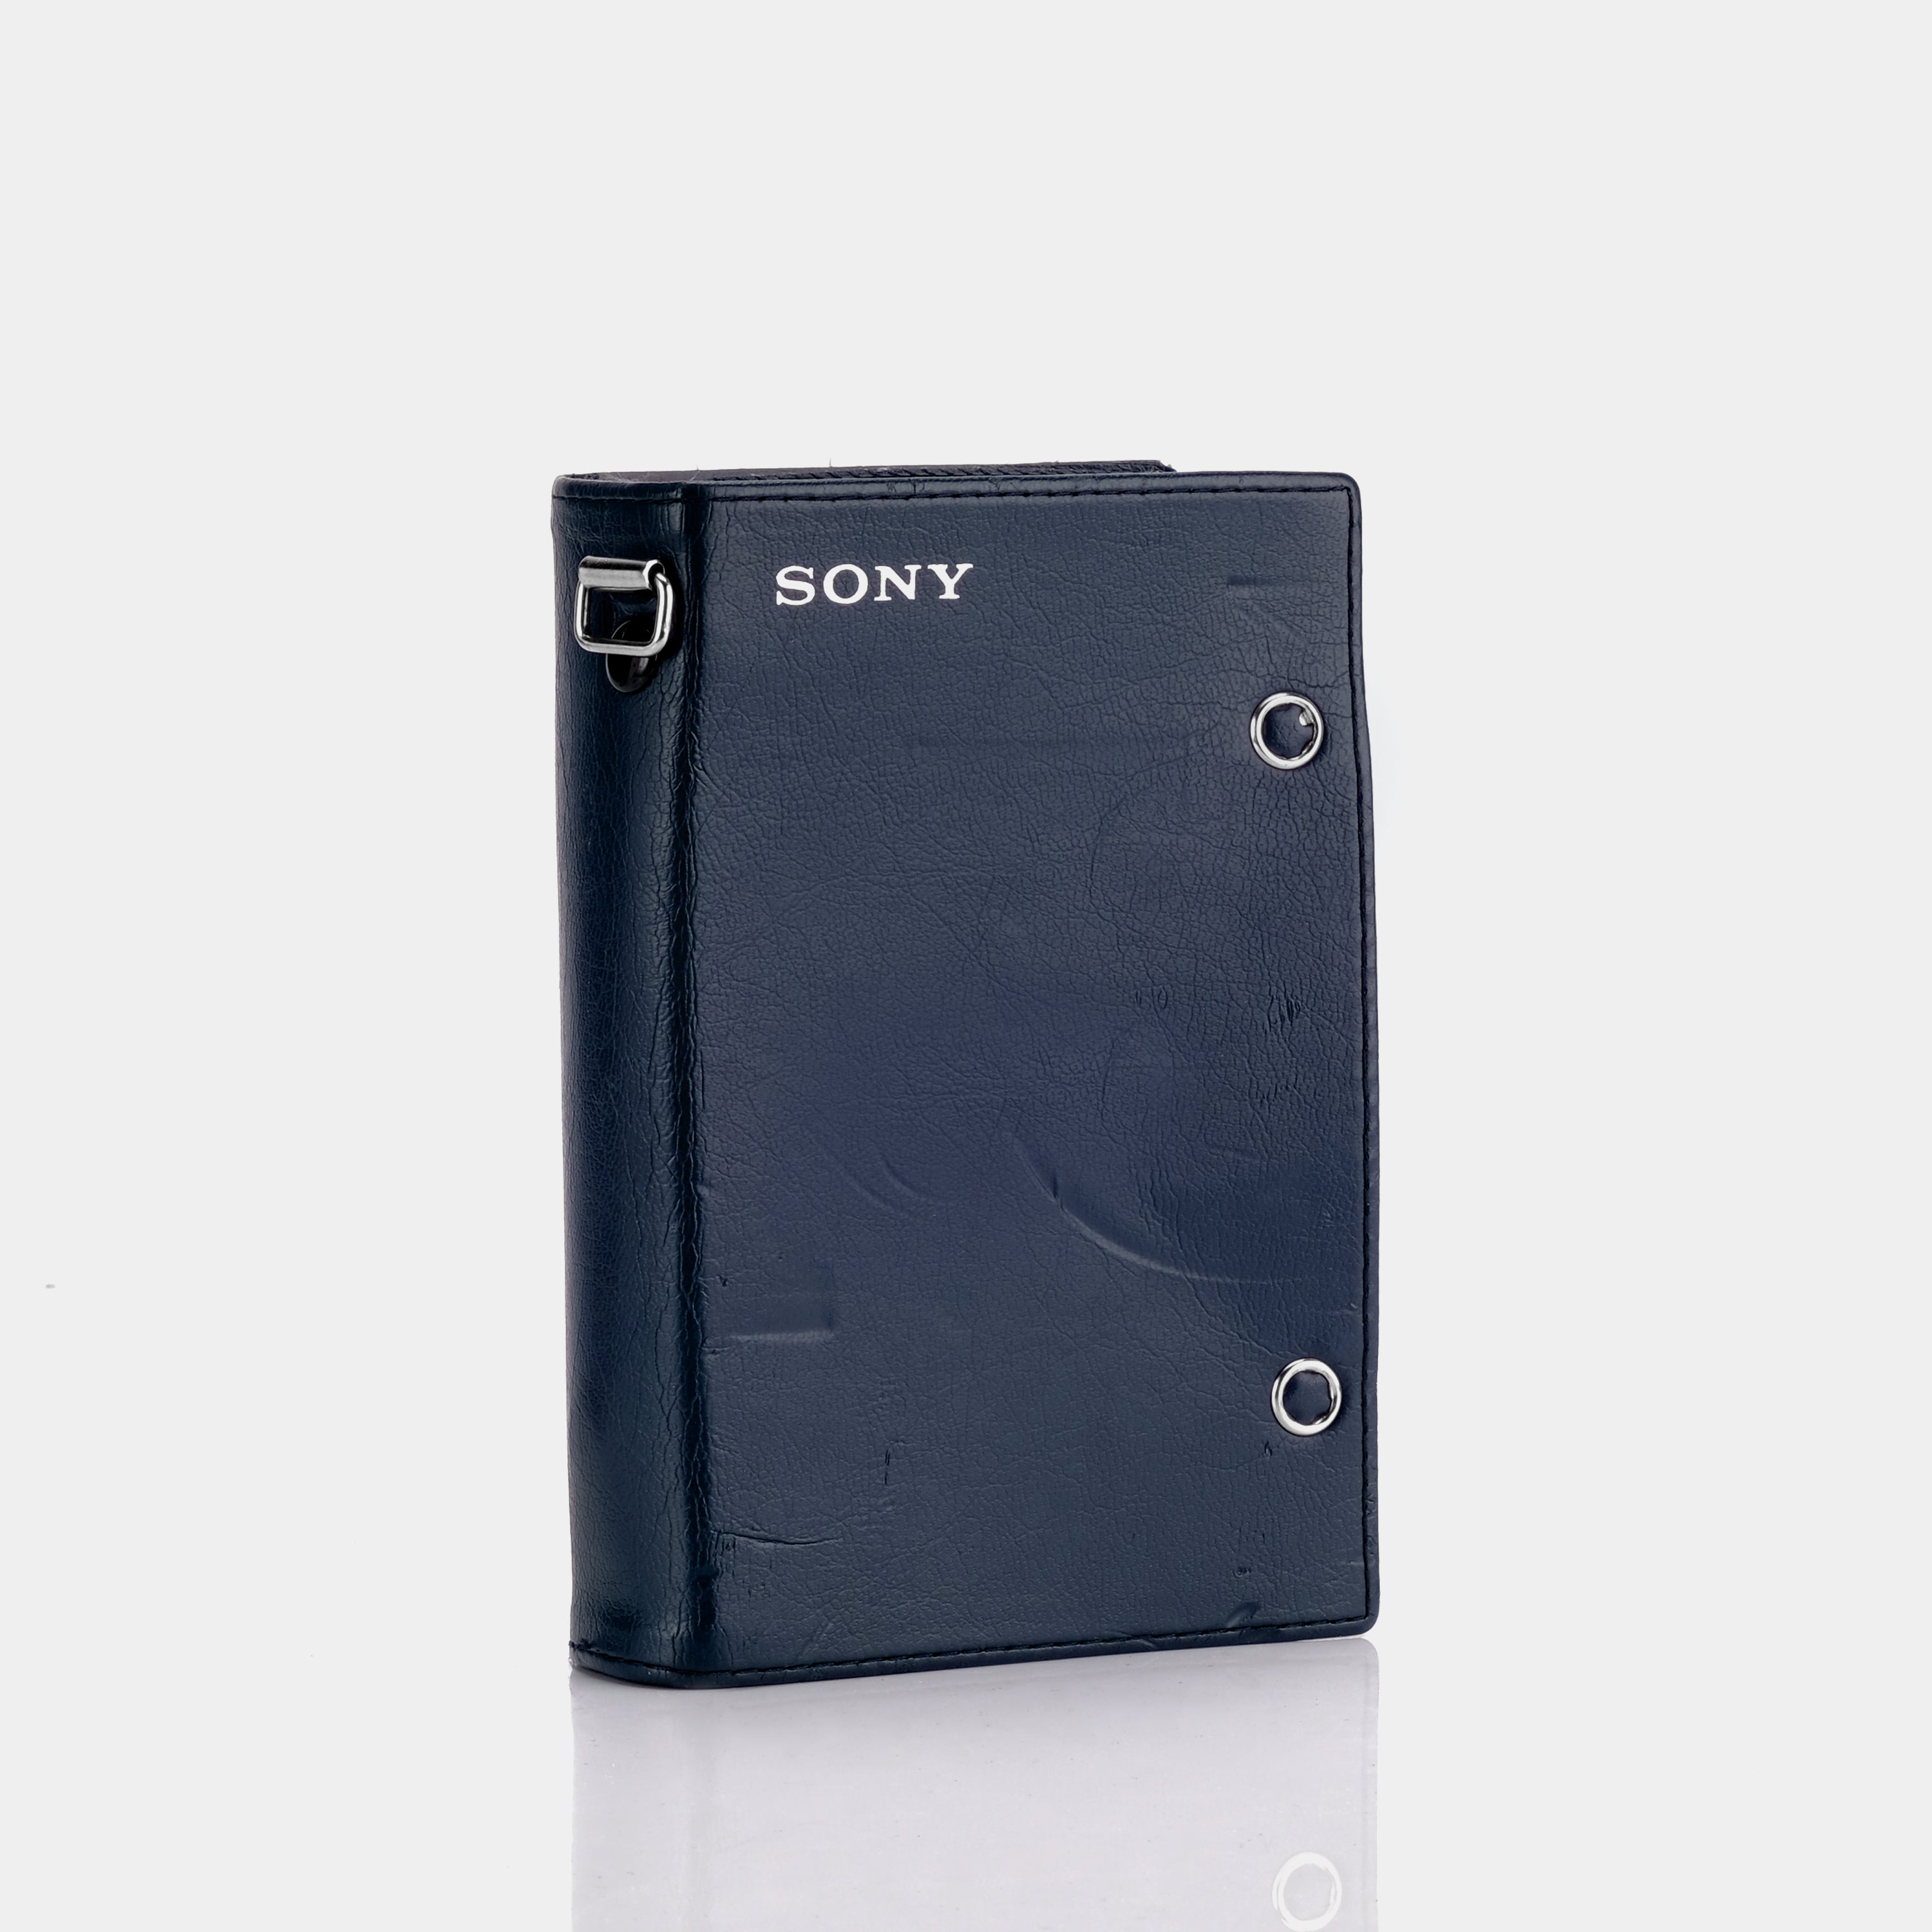 TPS-L2 Portable Cassette Player Case